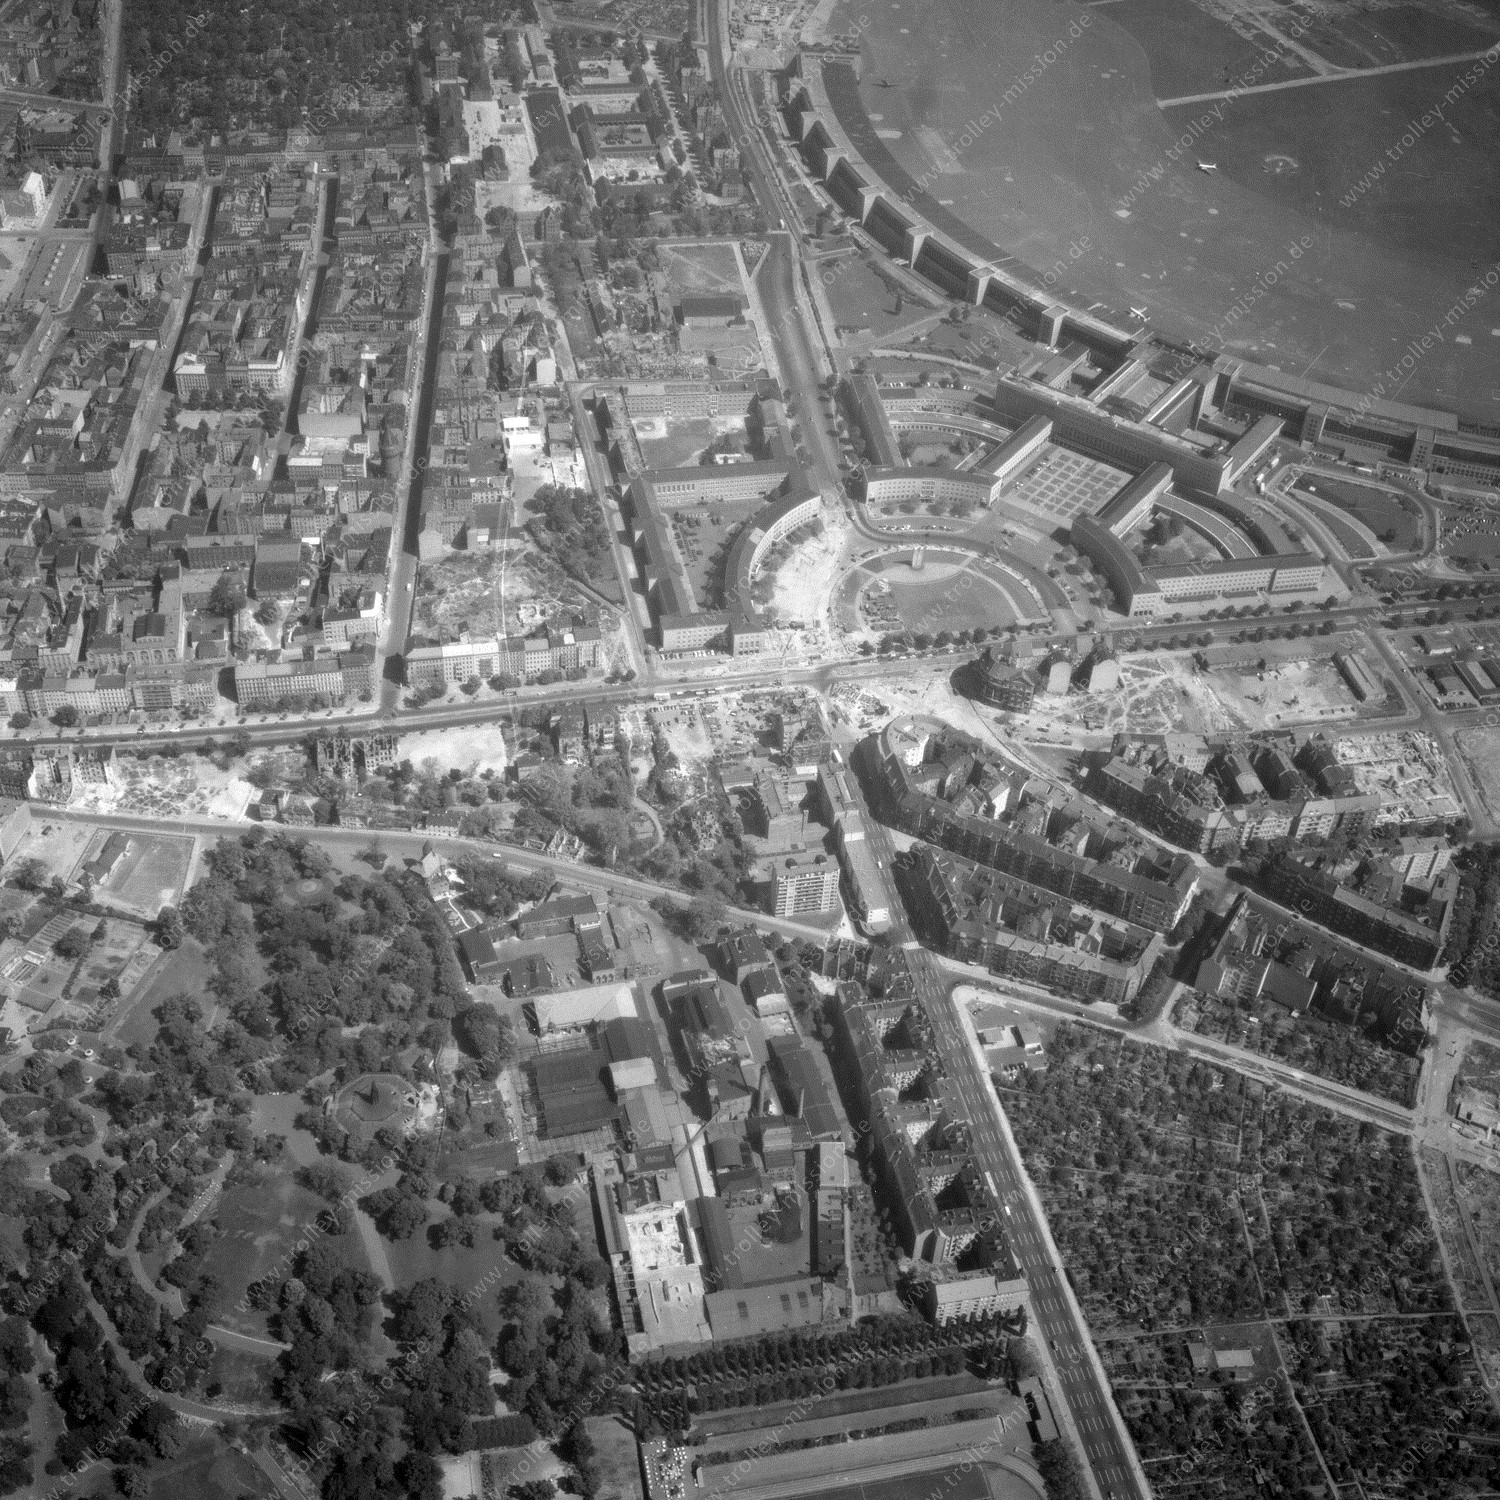 Alte Fotos und Luftbilder von Berlin - Luftbildaufnahme Nr. 01 - Historische Luftaufnahmen von West-Berlin aus dem Jahr 1954 - Flugstrecke India